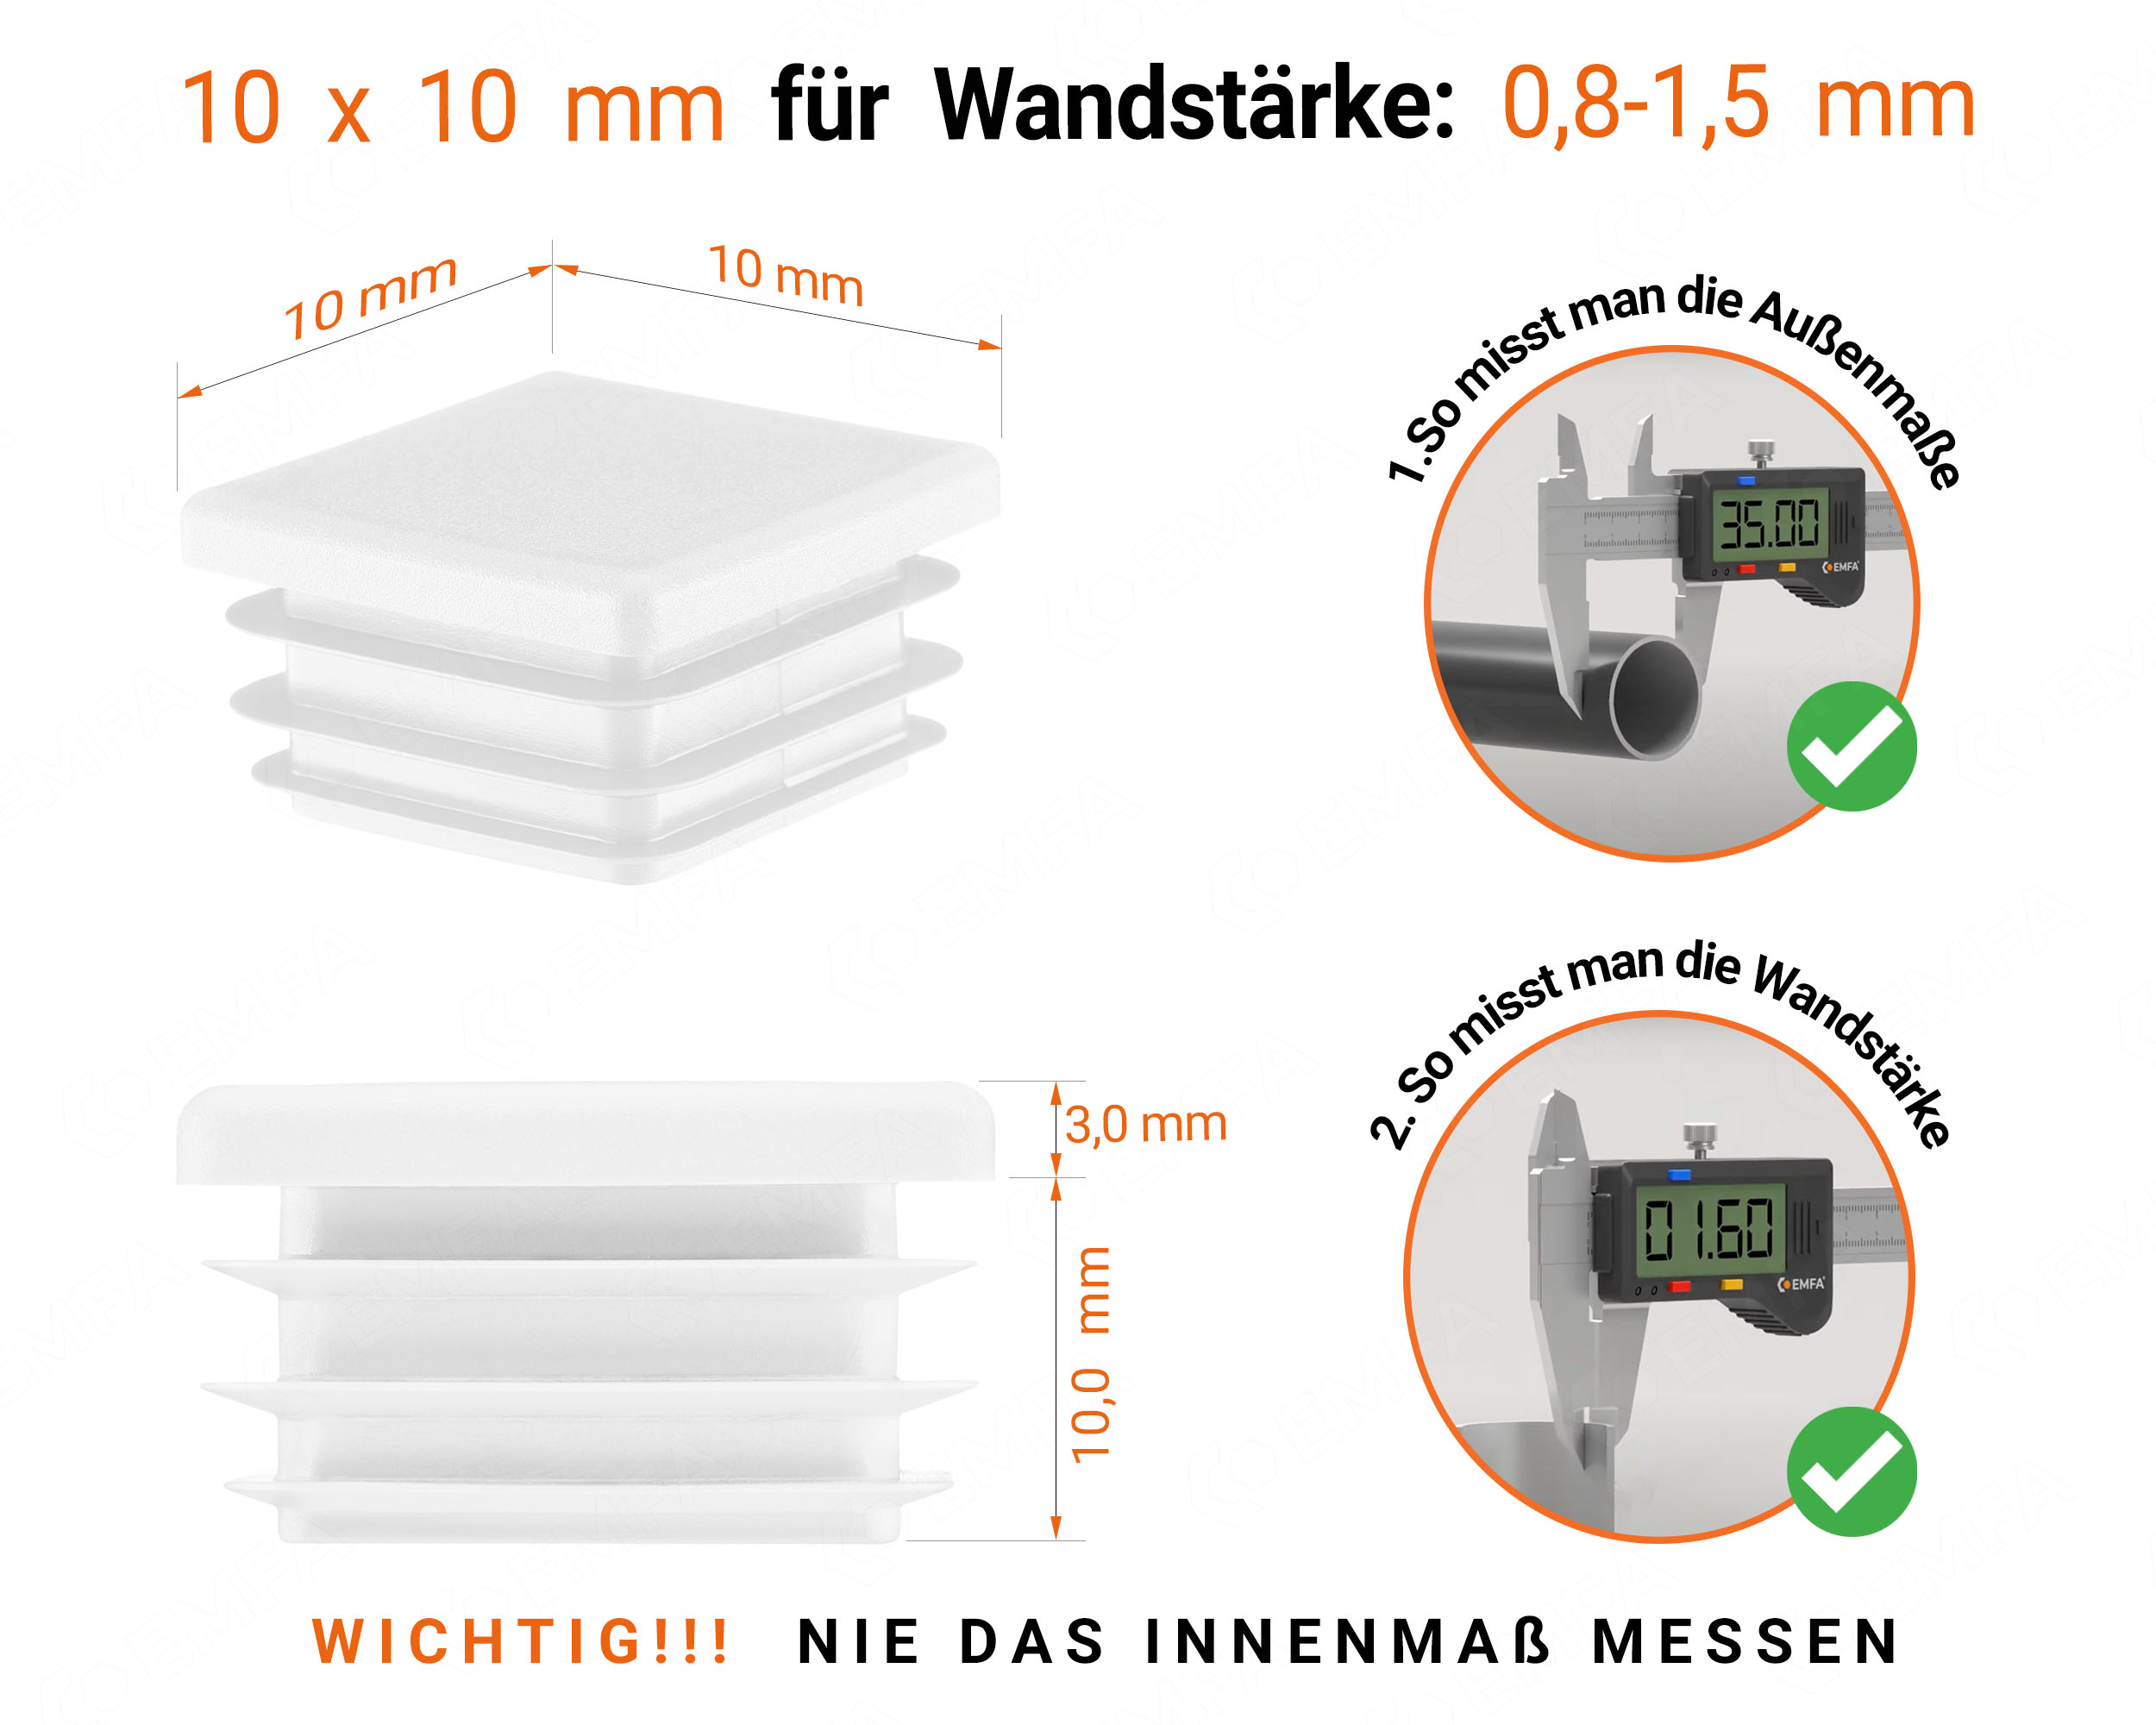 Weiße Endkappe für Vierkantrohre in der Größe 10x10 mm mit technischen Abmessungen und Anleitung für korrekte Messung